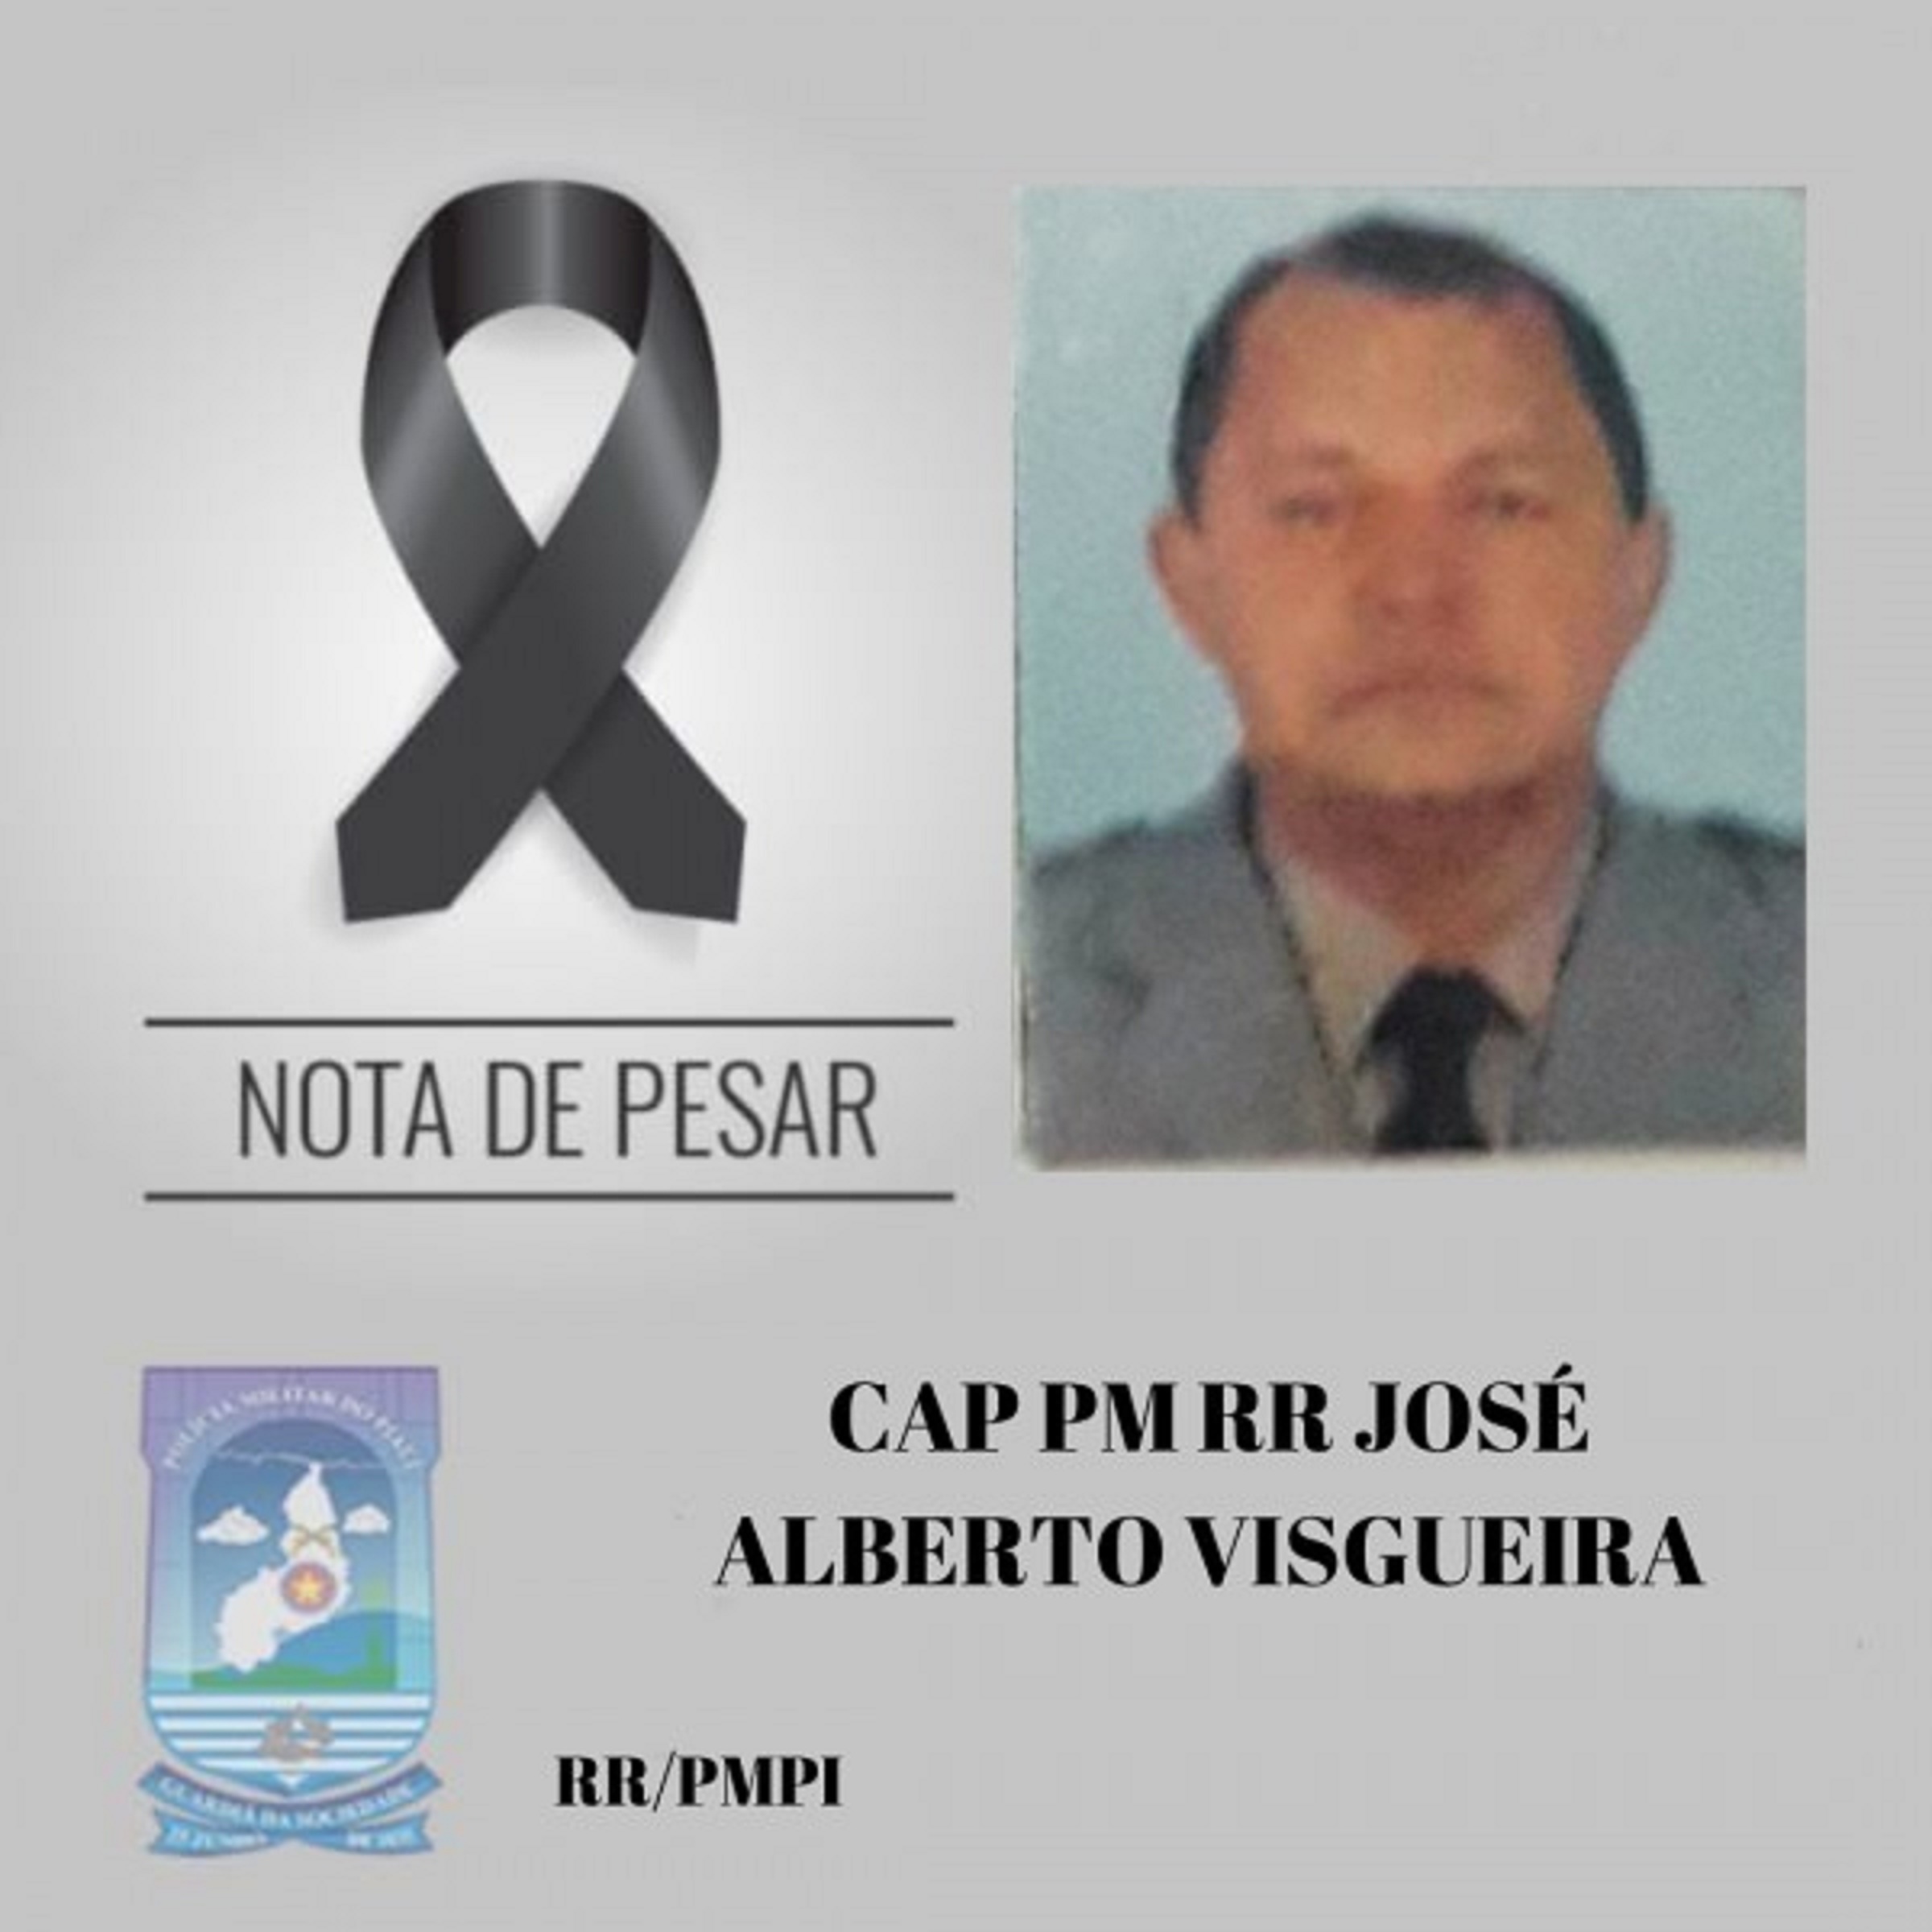 Capitão José Alberto Visgueira